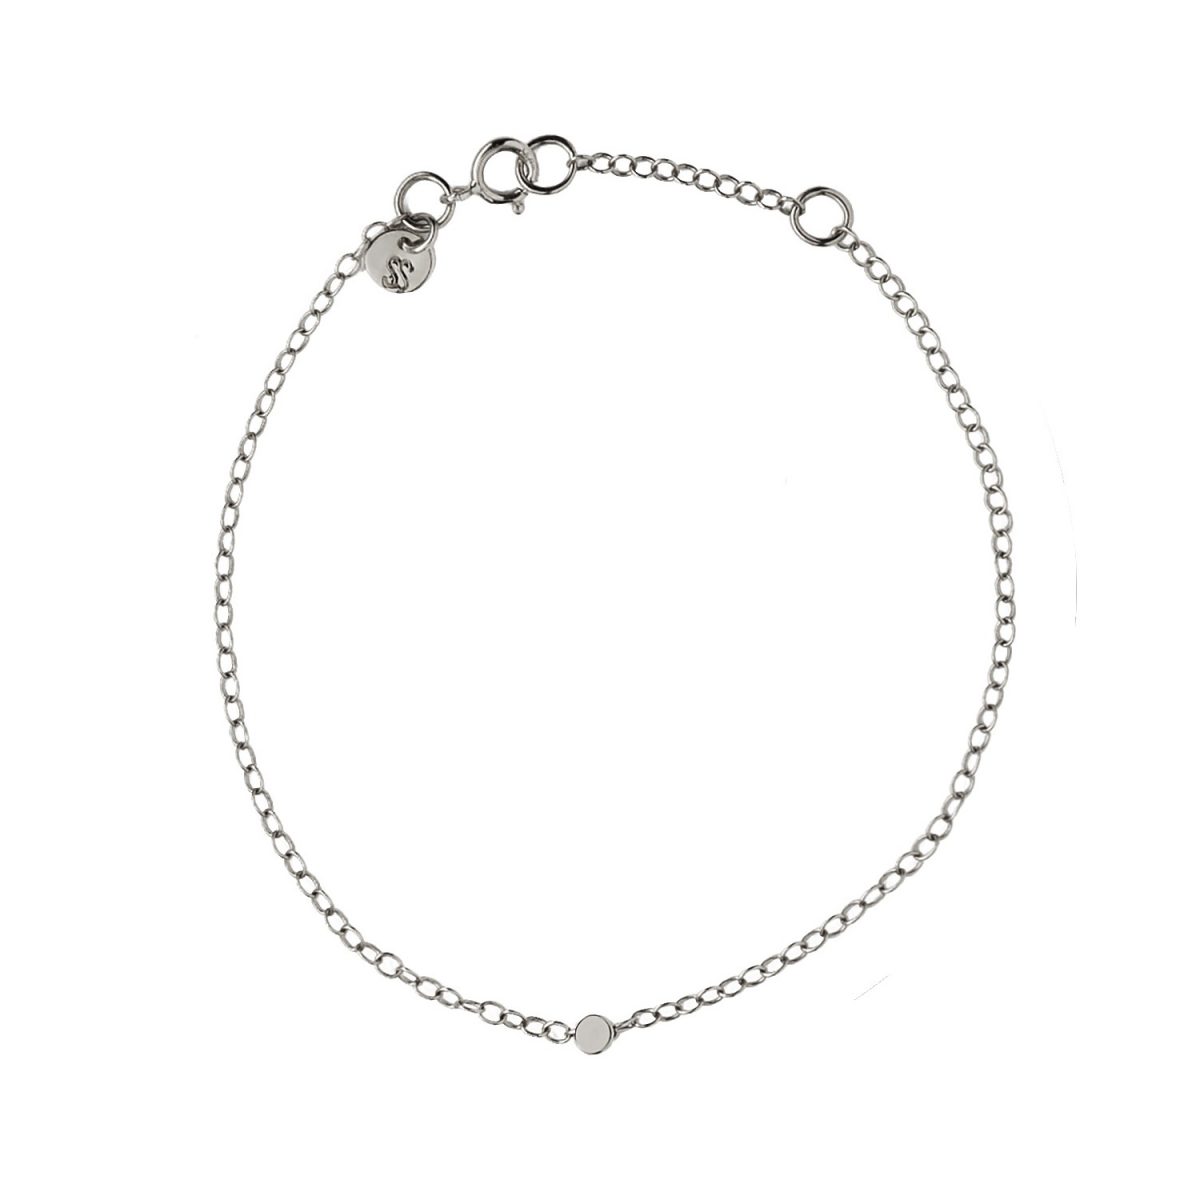 samojauskaite_jewellery_dot_bracelet_silver_full